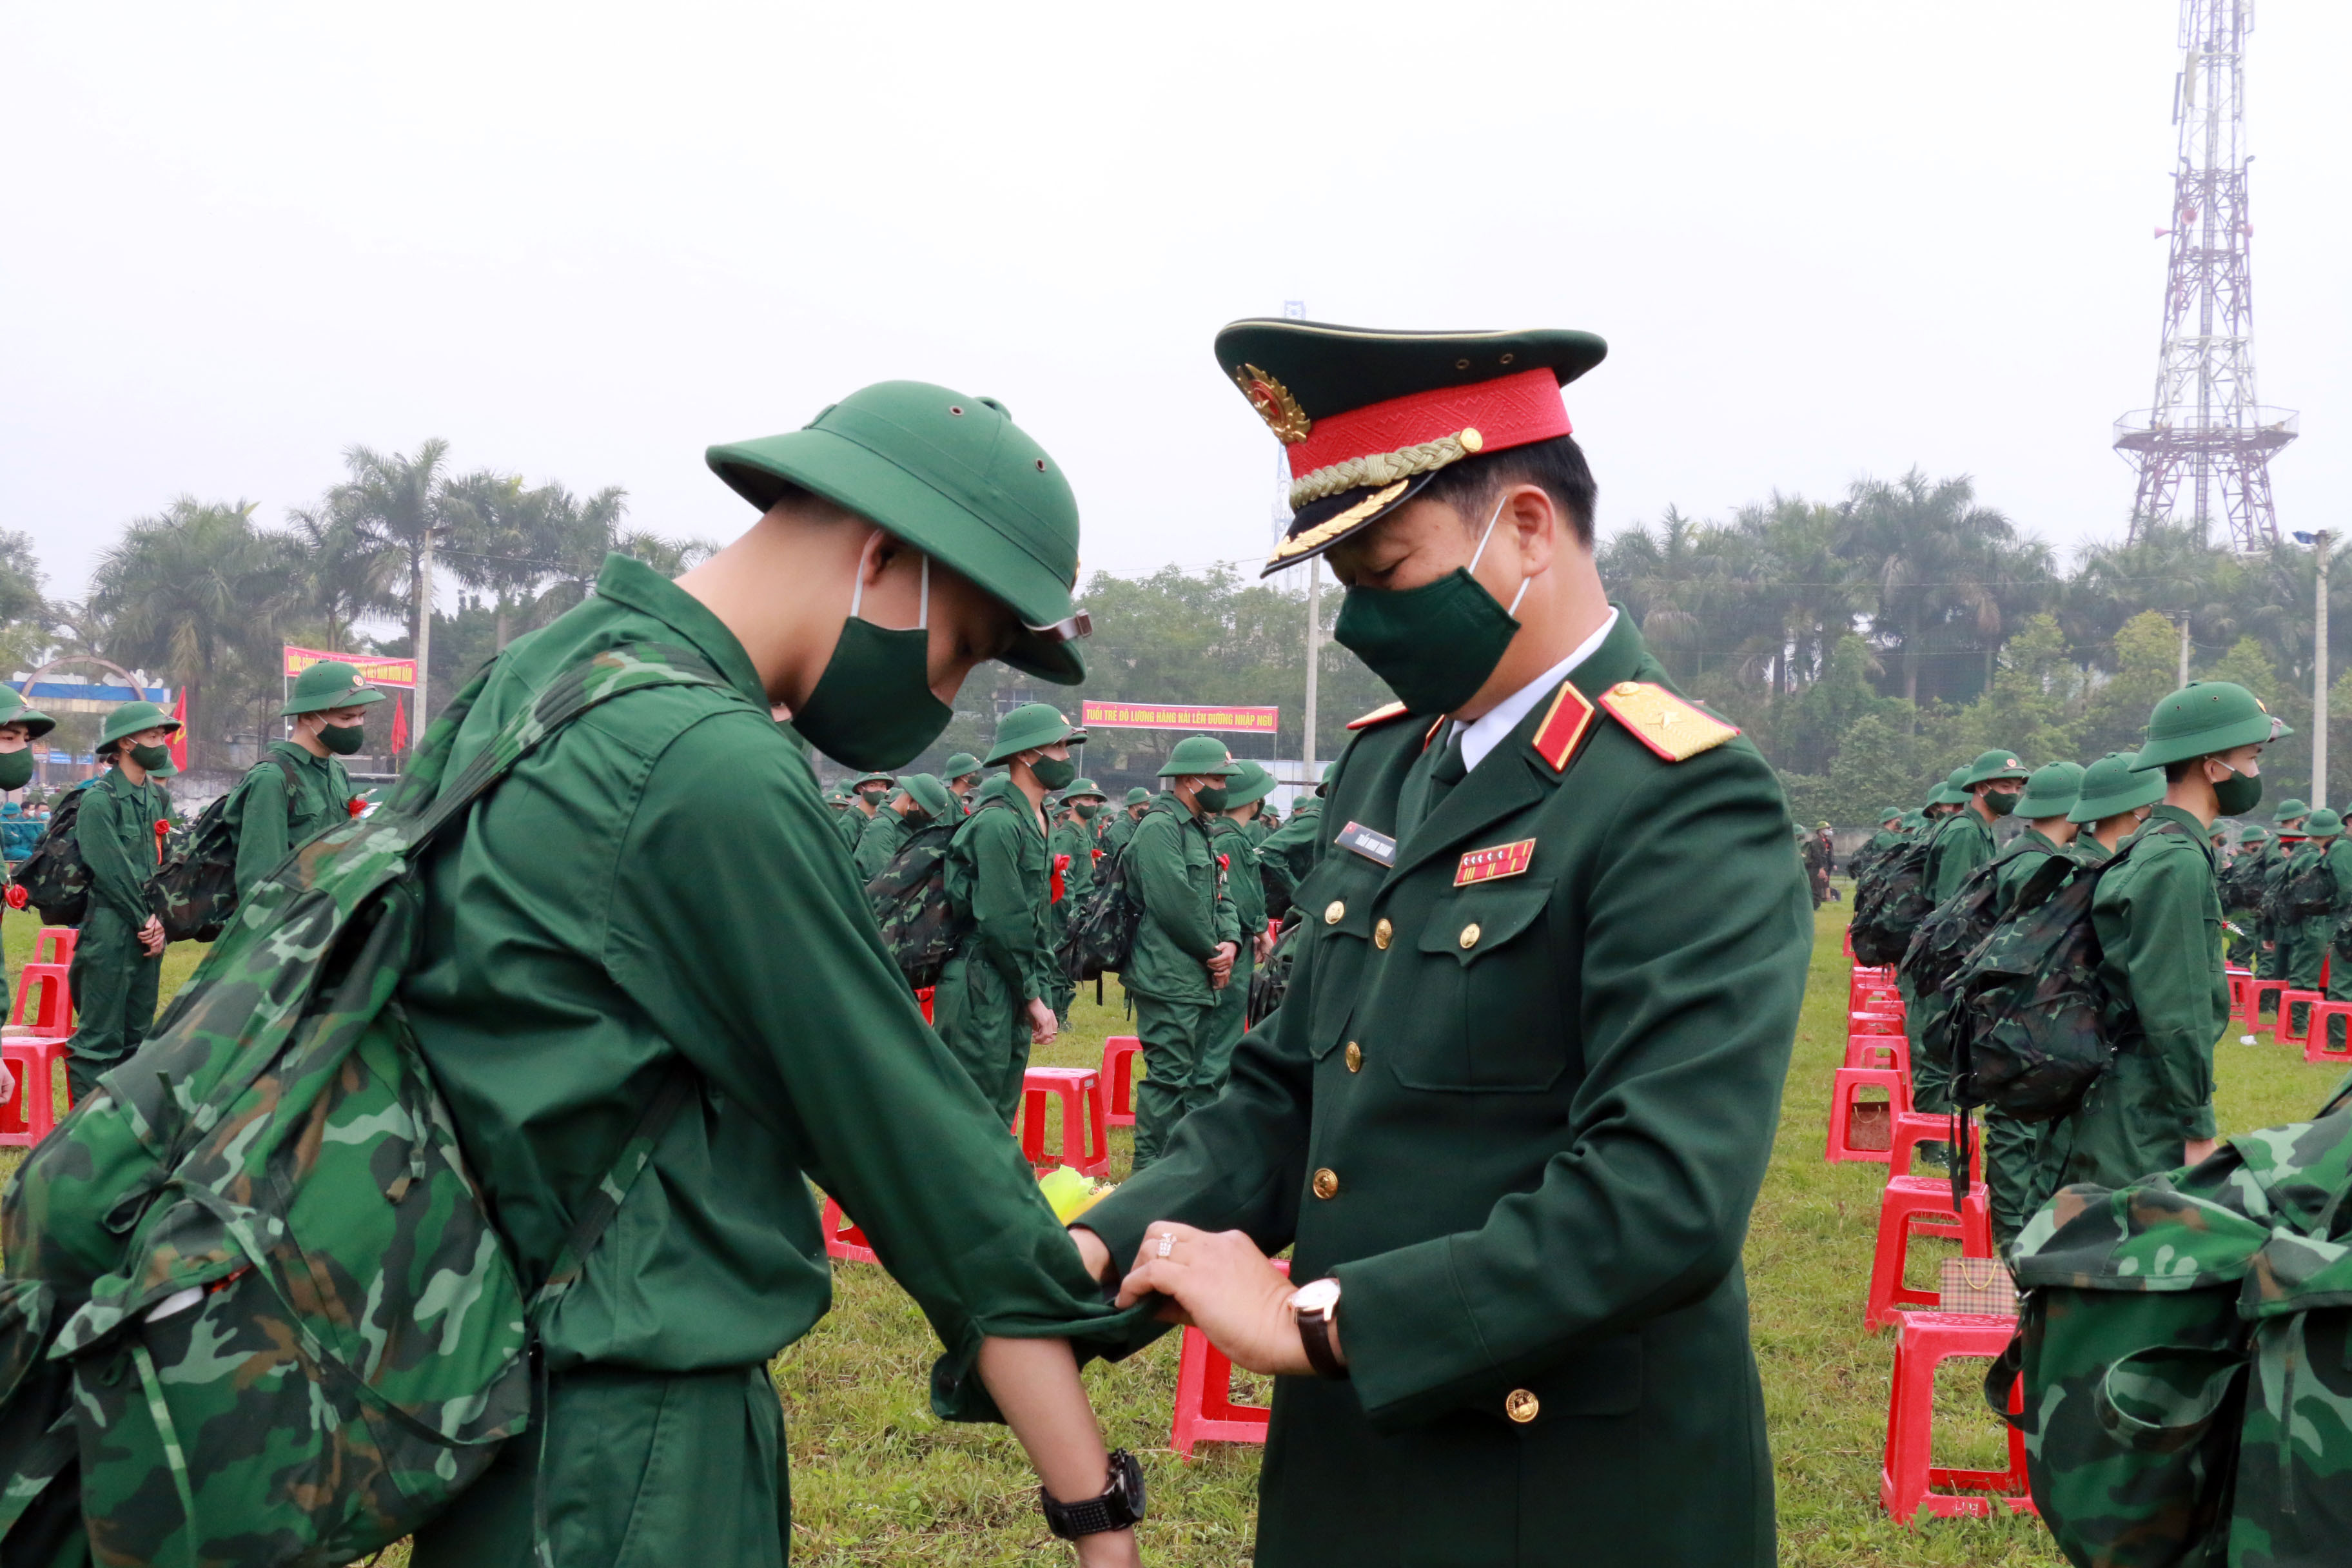 Đồng chí Thiếu tướng Trần Minh Thanh - Chủ nhiệm Chính trị Quân khu 4 gặp gỡ và trò chuyện, hướng dẫn các tân binh chỉnh trang quân phục trước khi nhập ngũ. Ảnh: MH